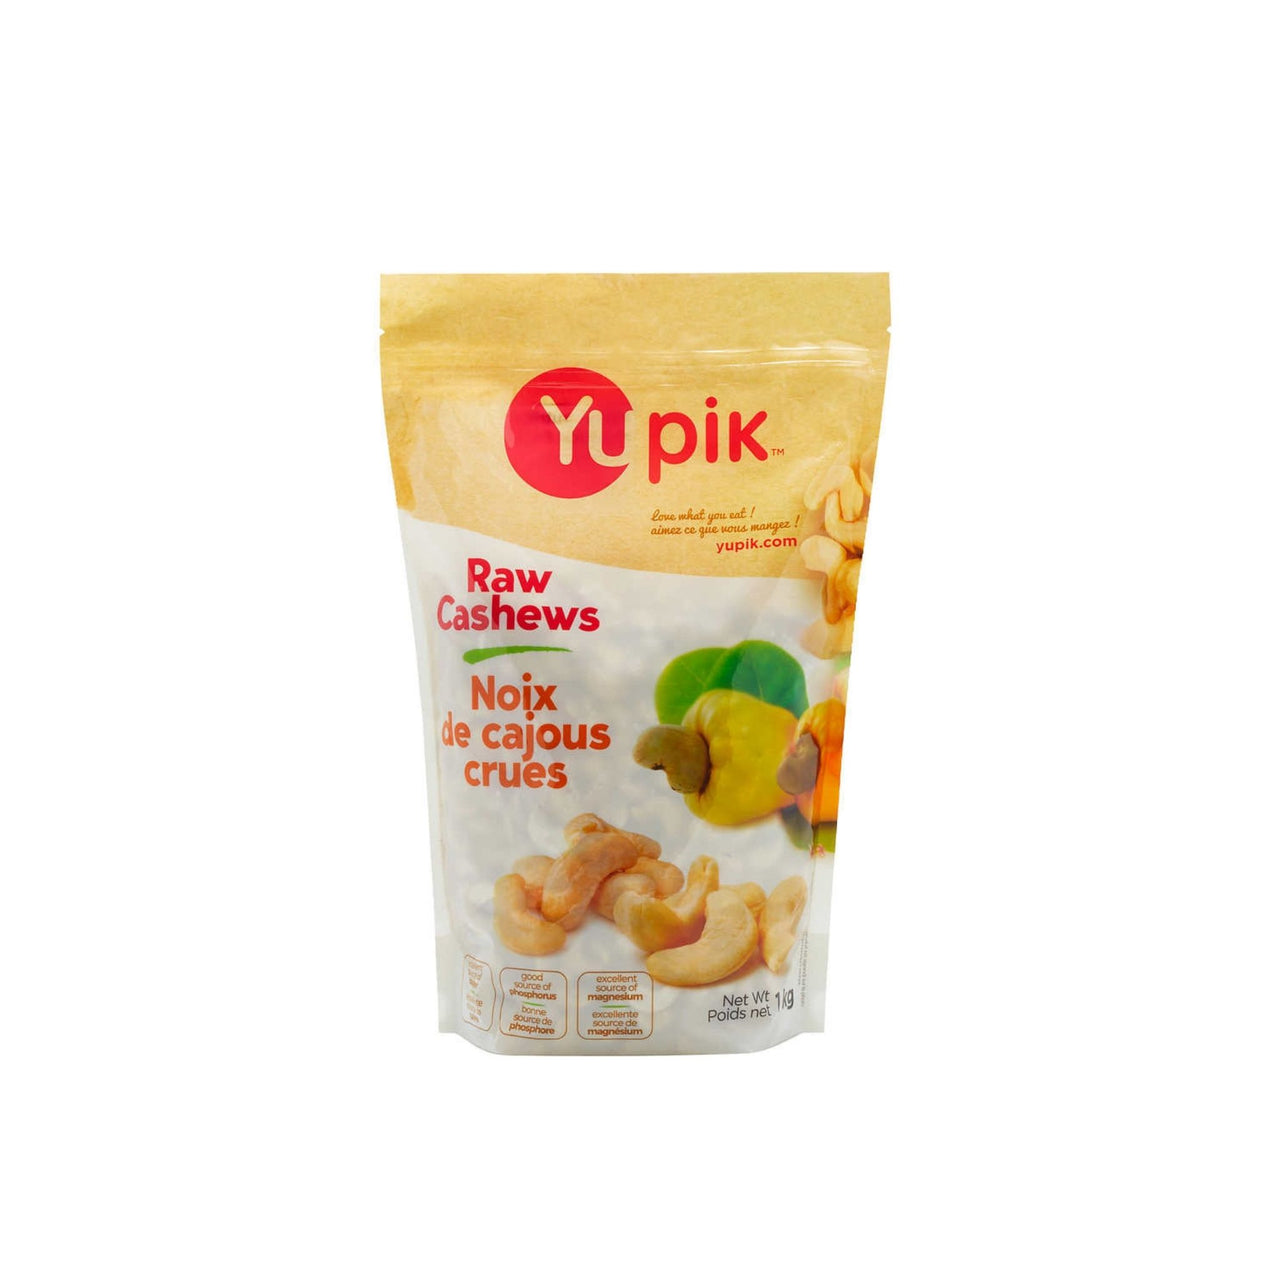 Image of Yupik Raw Cashews - 1 x 1000 Grams